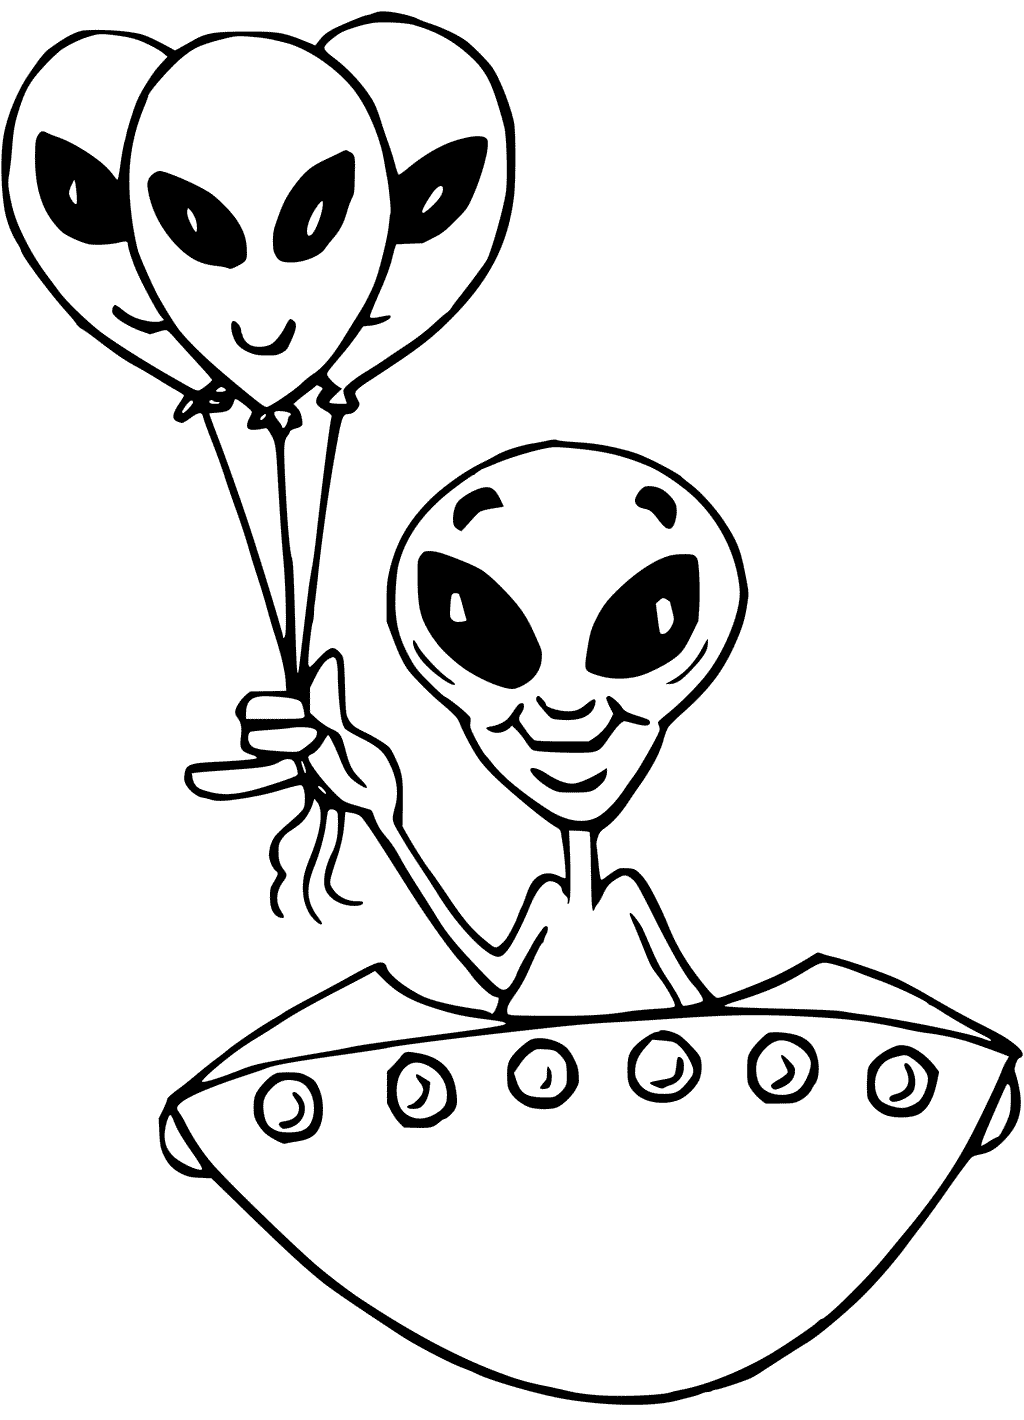 Kleurplaat van grappige alien